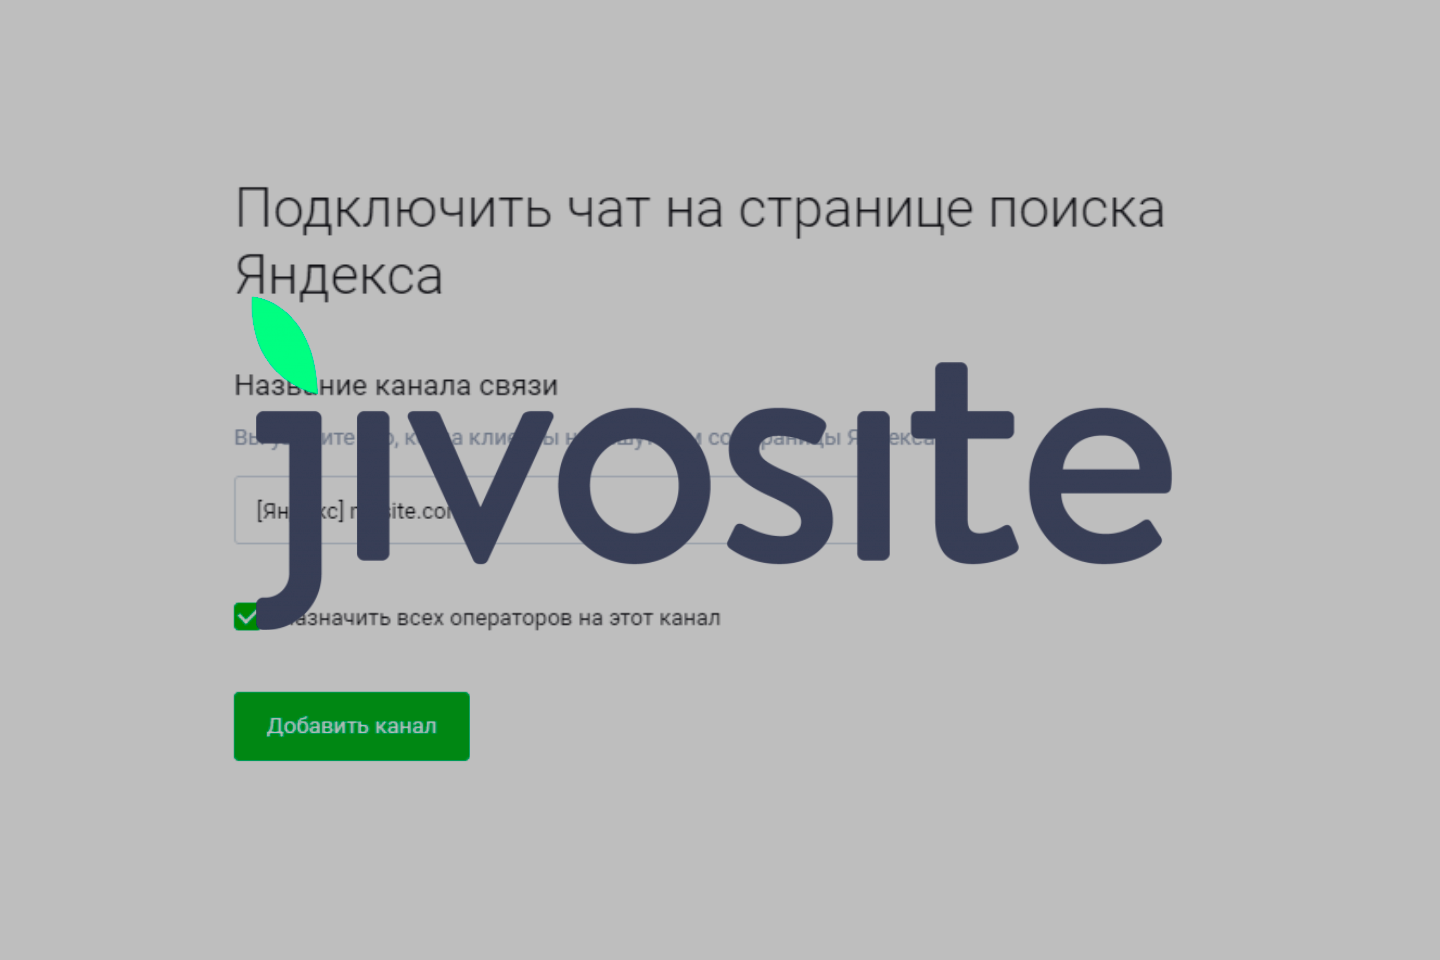 Как добавить кнопку чата JivoSite в поиск Яндекса